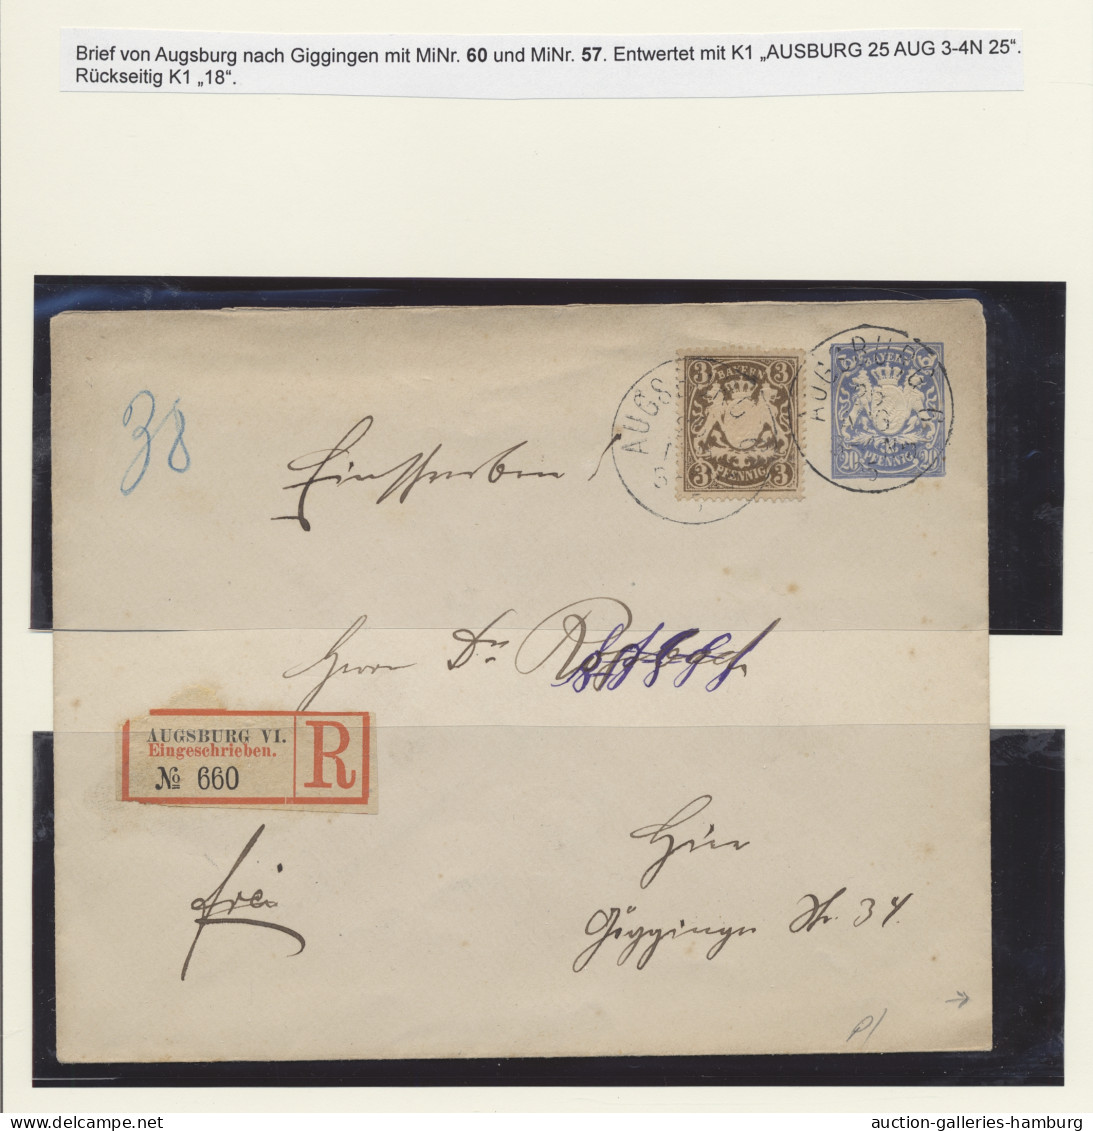 */o/Briefstück/Brf. Bayern - Marken und Briefe: 1867-1900, beachtenswerte ungebrauchte und gestempel